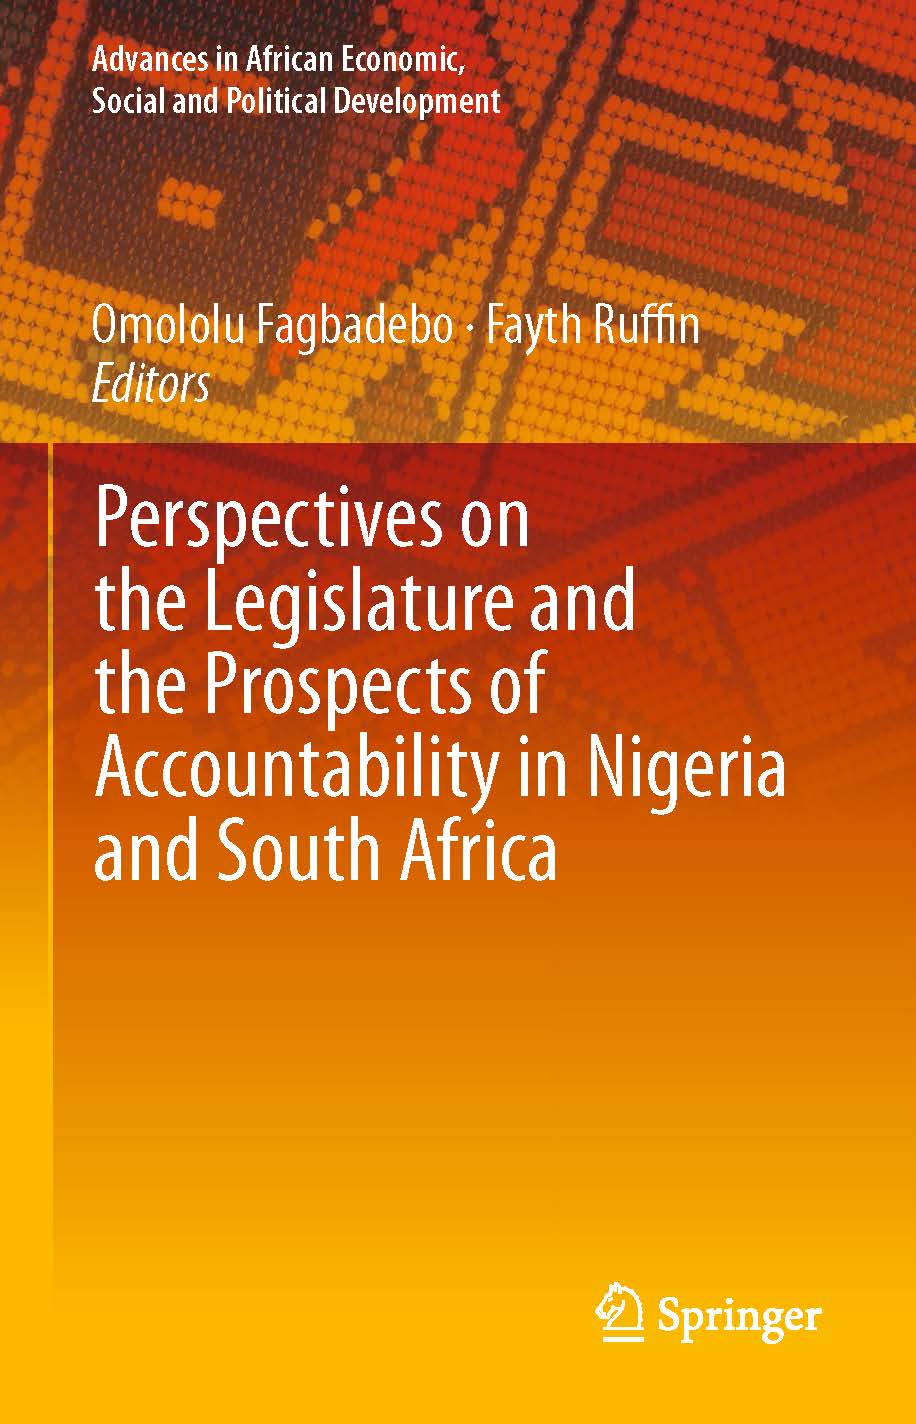 页面提取自－2019_Book_Perspectives on the Legislature and the Prospects of Accountability in Nigeria and South Africa.jpg